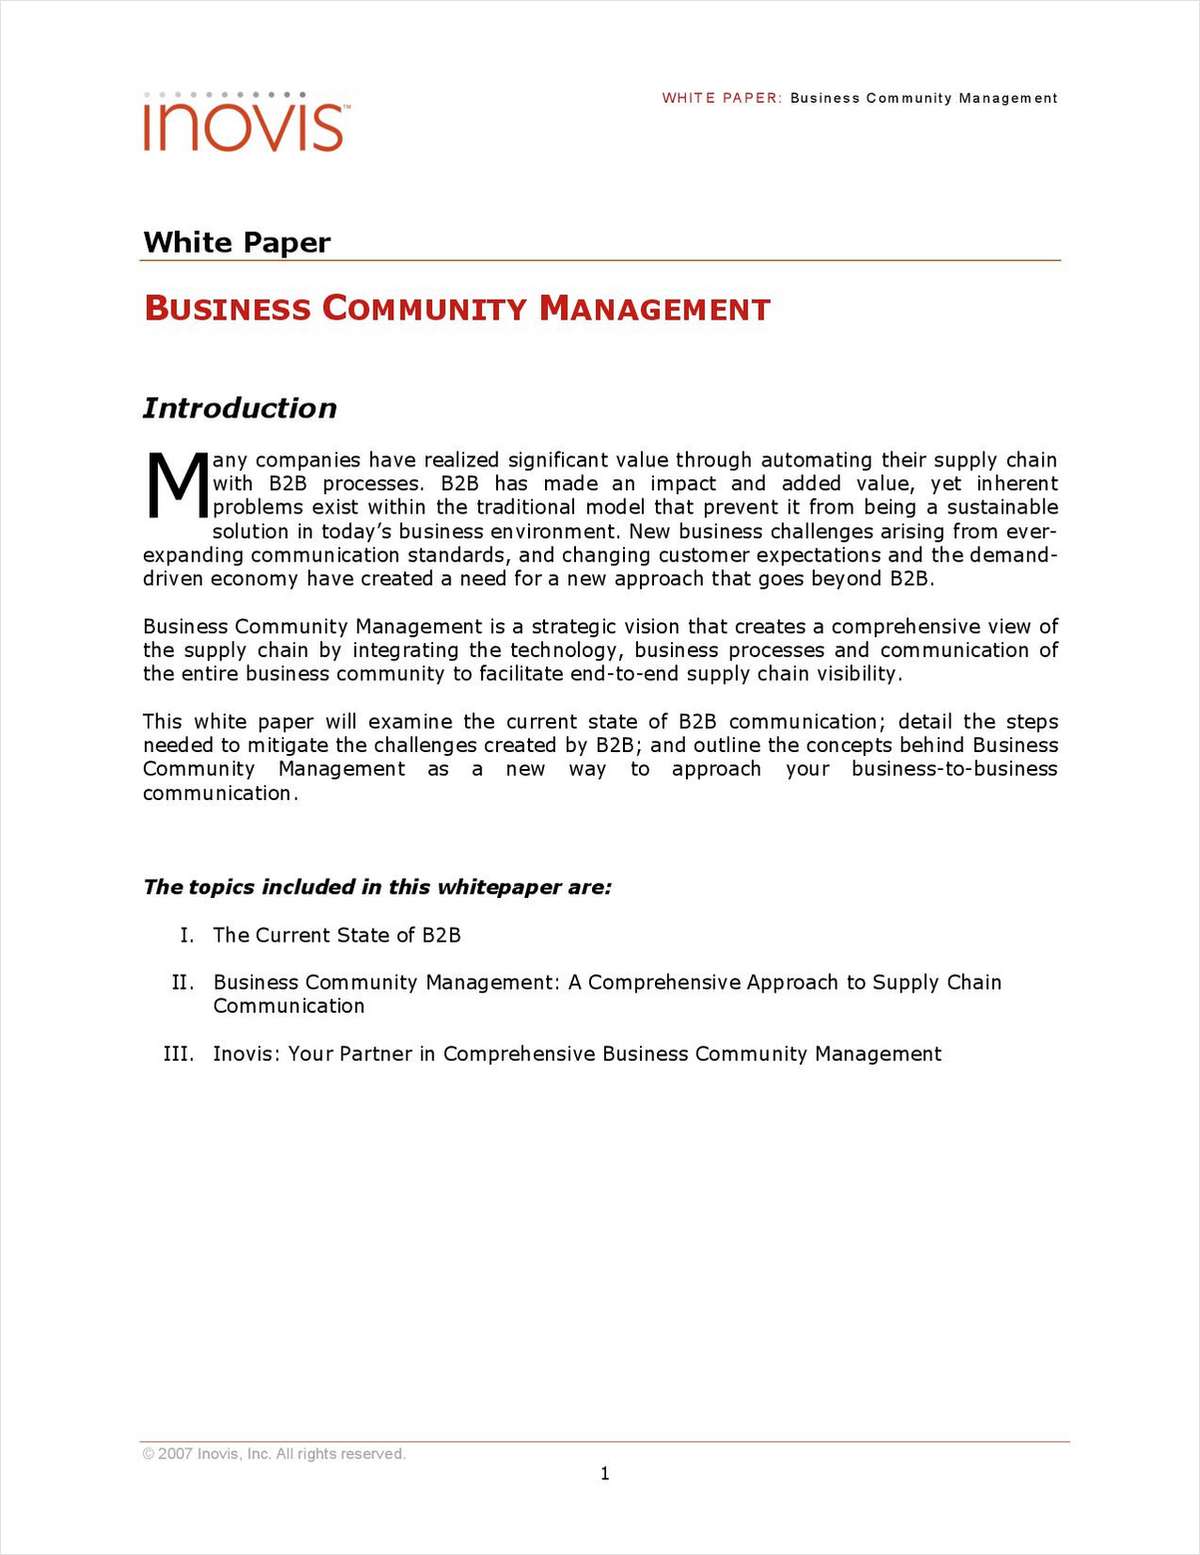 Business Community Management